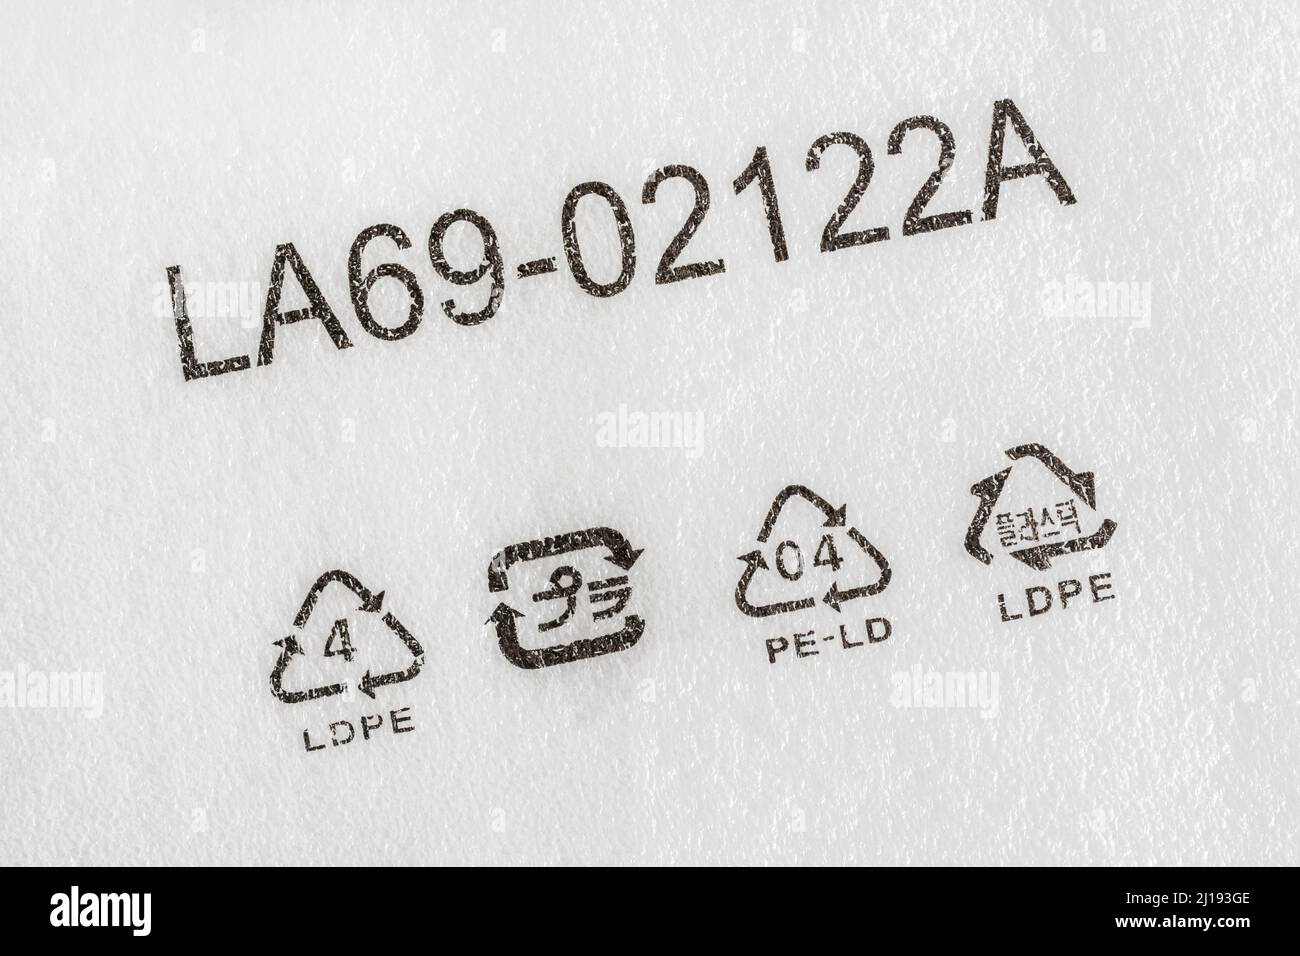 Nahaufnahme des LDPE-Symbols zur Harzkennzeichnung Code 4 Kunststoffe - hier gedruckt auf einer starren Vielzahl von Schaumstoffverpackungen. Stockfoto